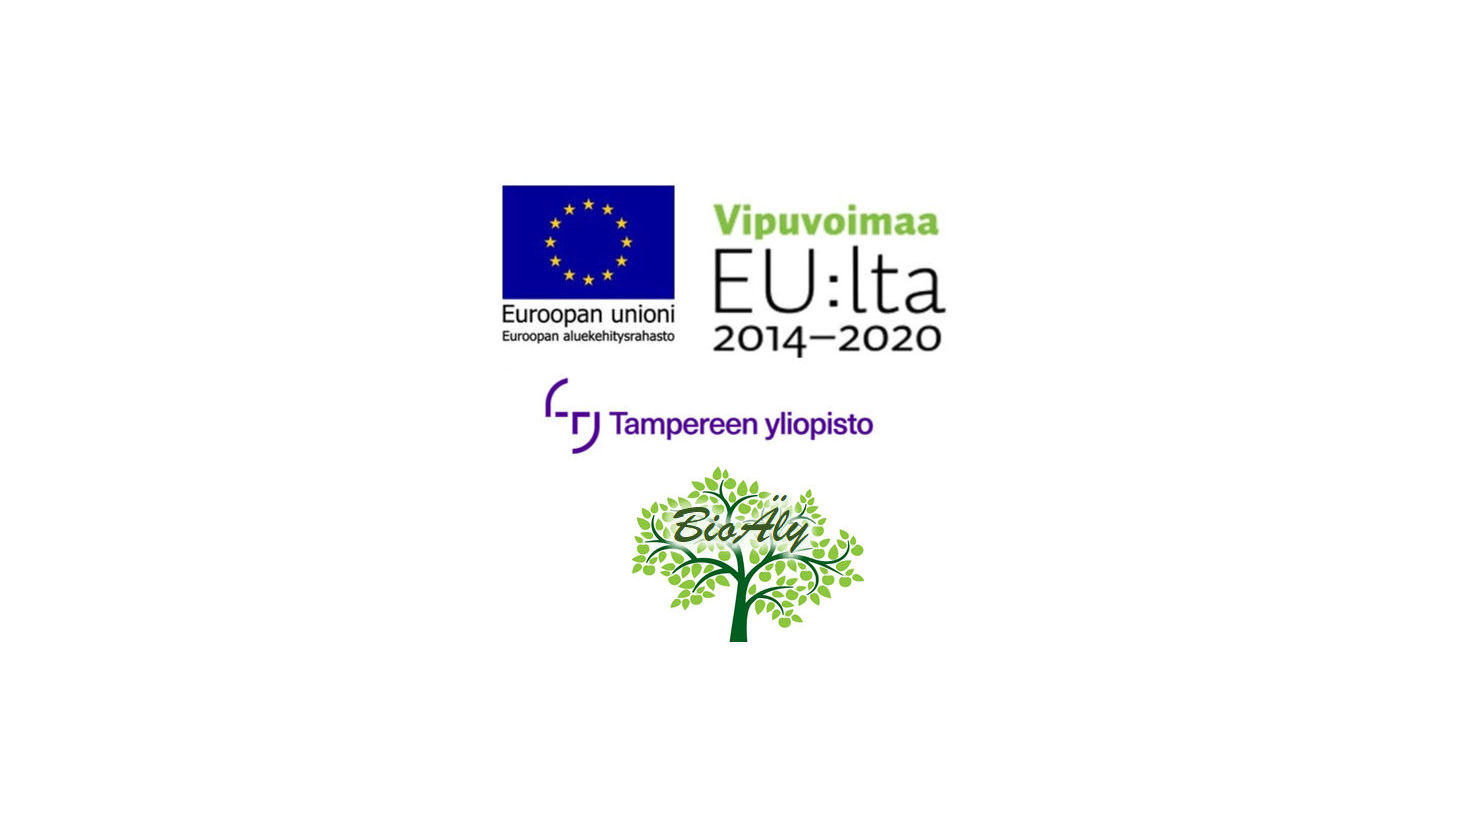 BioÄlyn, Tampereen yliopiston, sekä EU:n logot